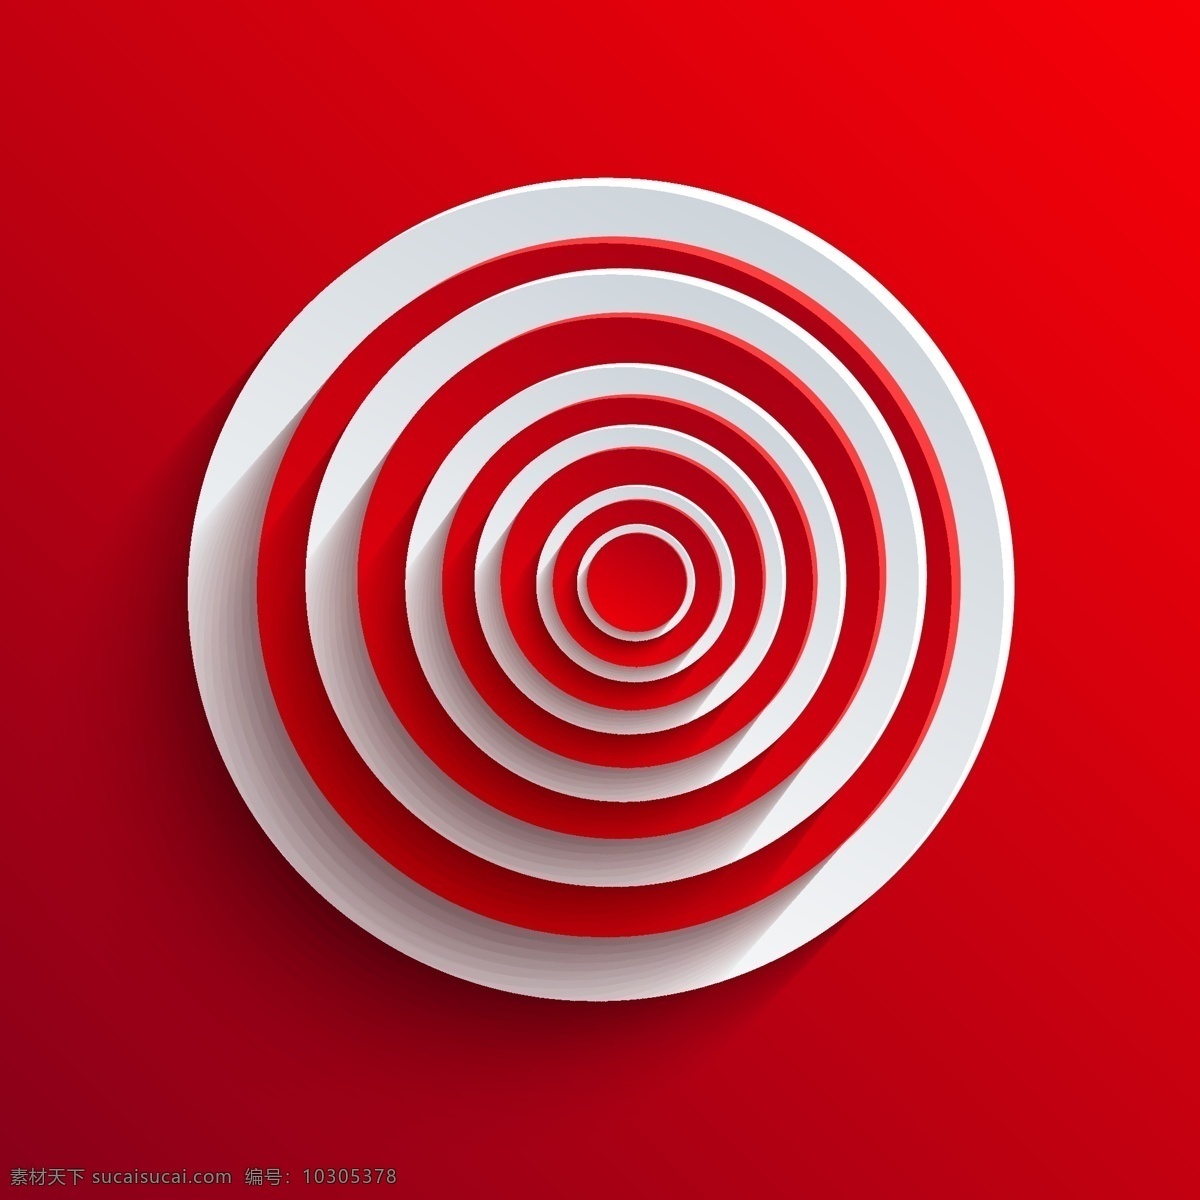 时尚 双色 图形设计 矢量 3d 白色 标签 抽象 对话框 红色 树叶 图标 圆环 图形 anmin 矢量图 其他矢量图